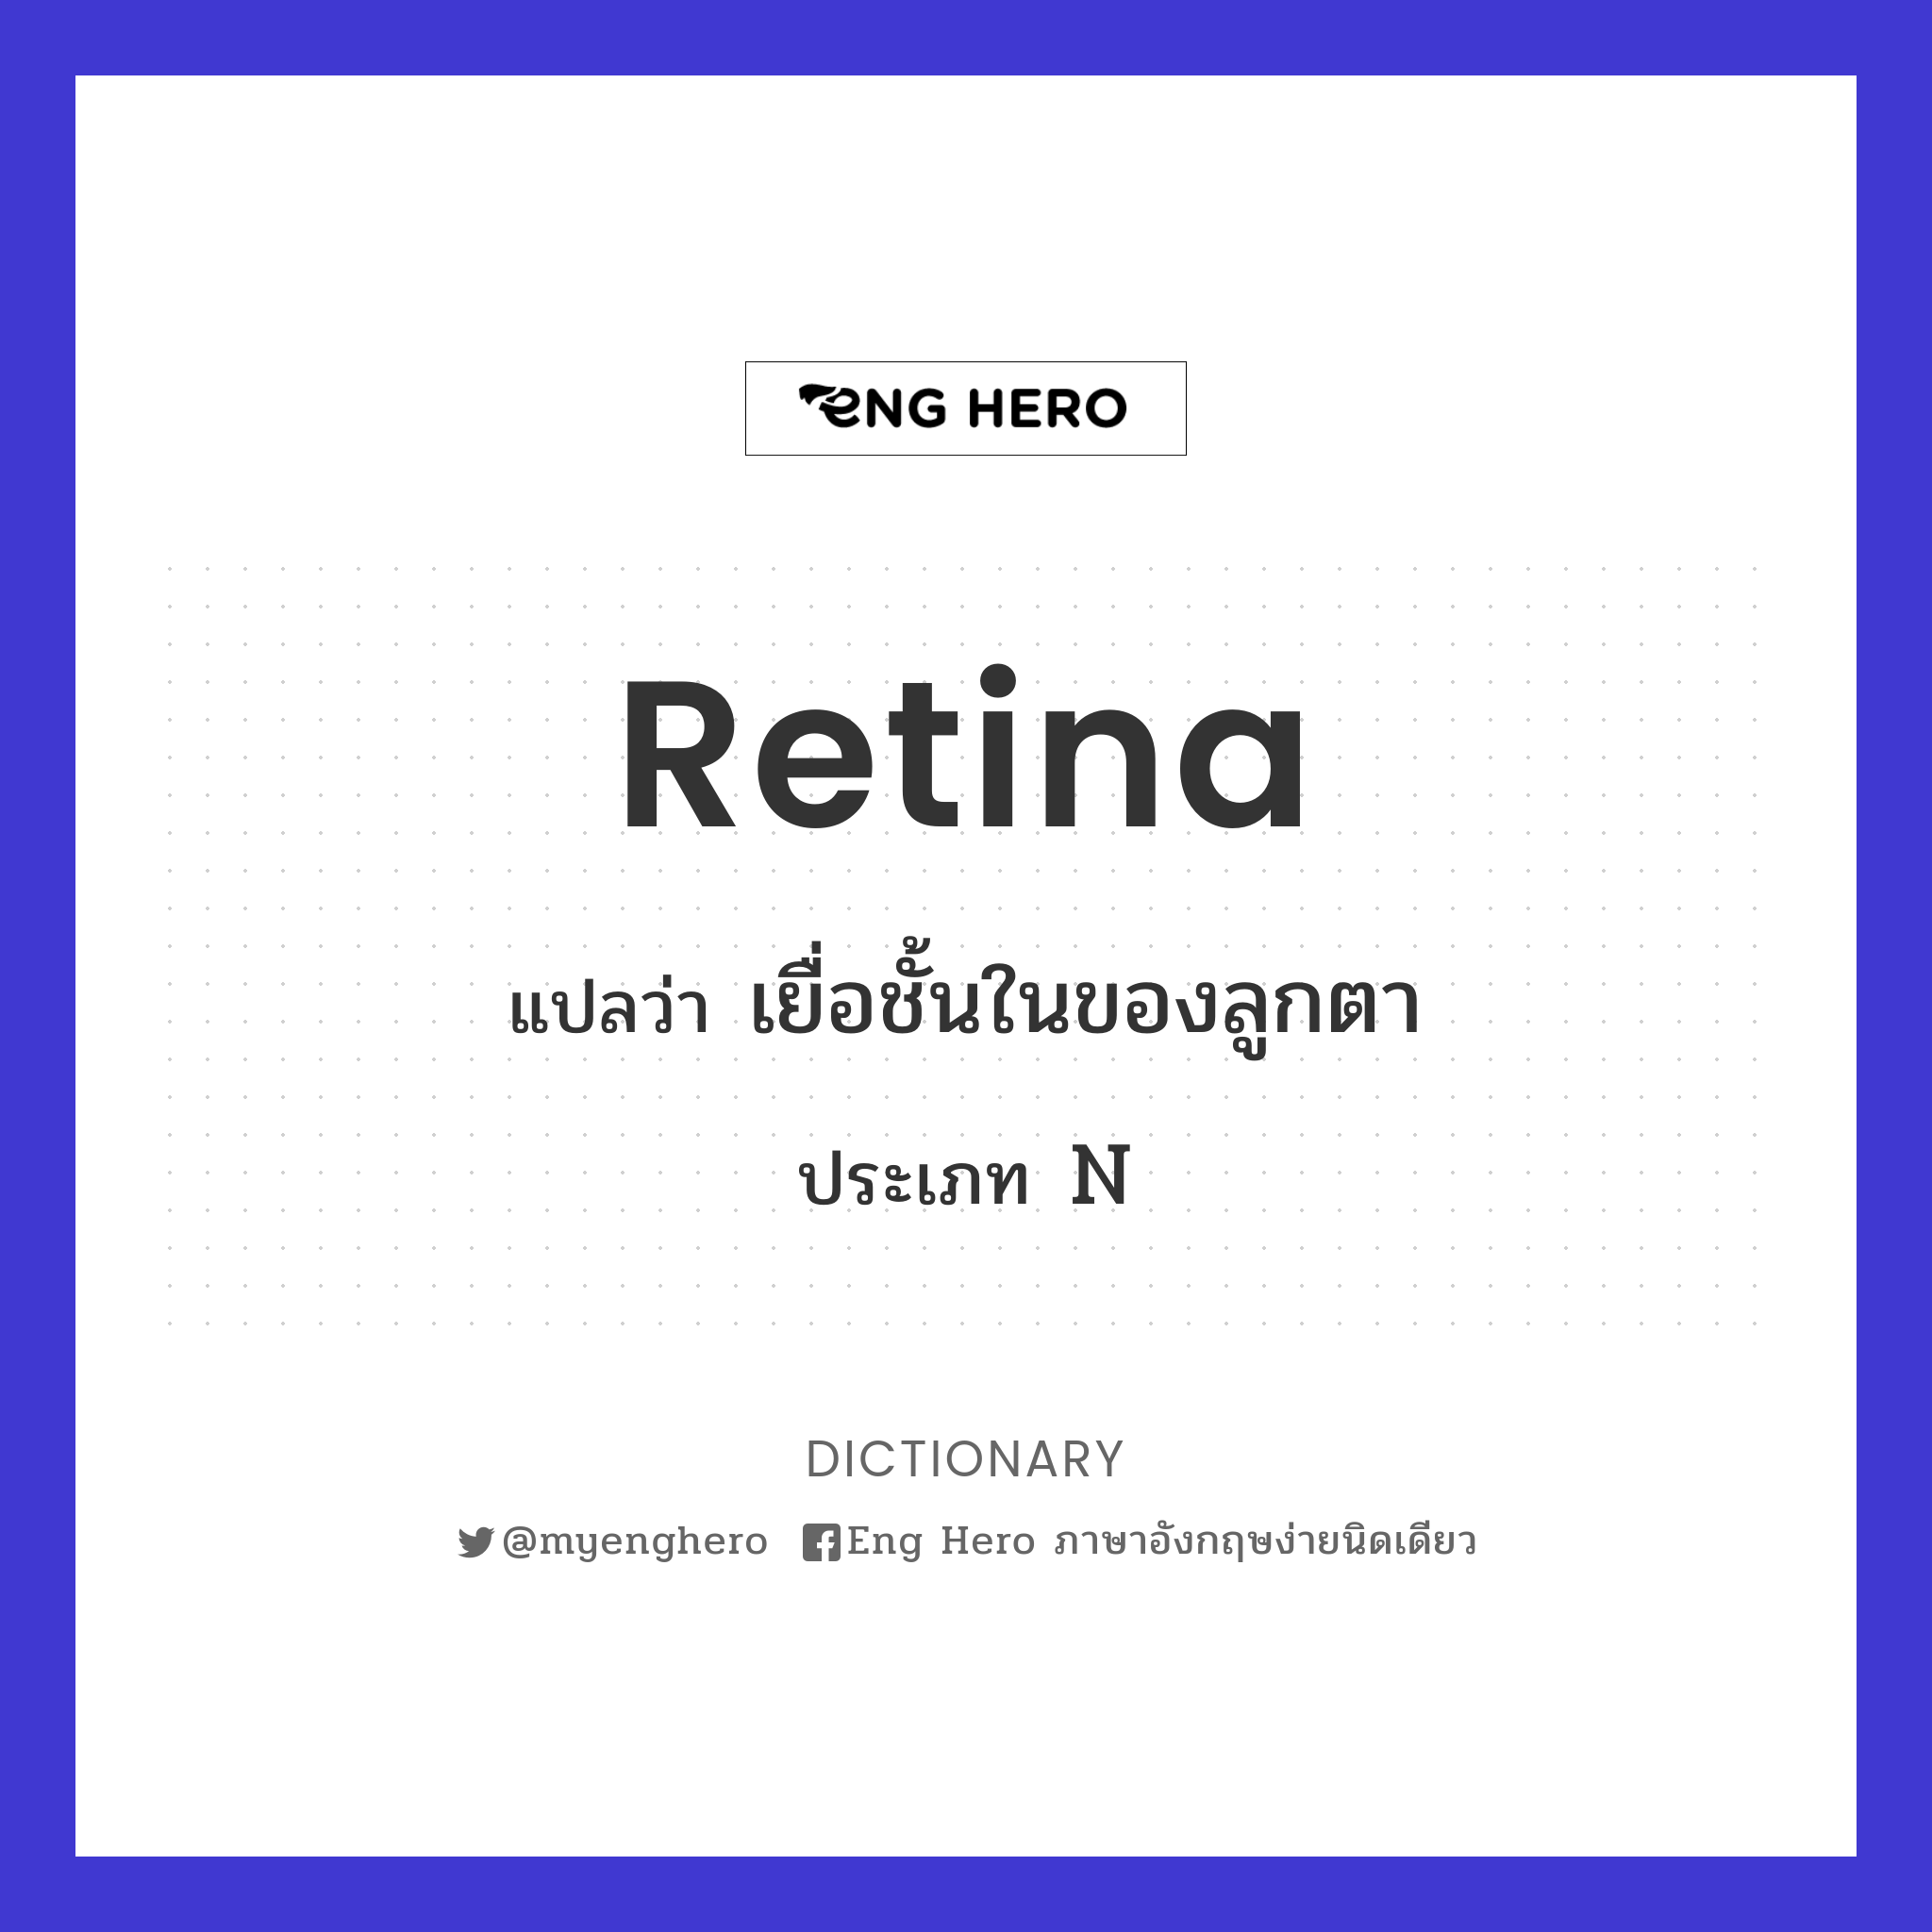 retina